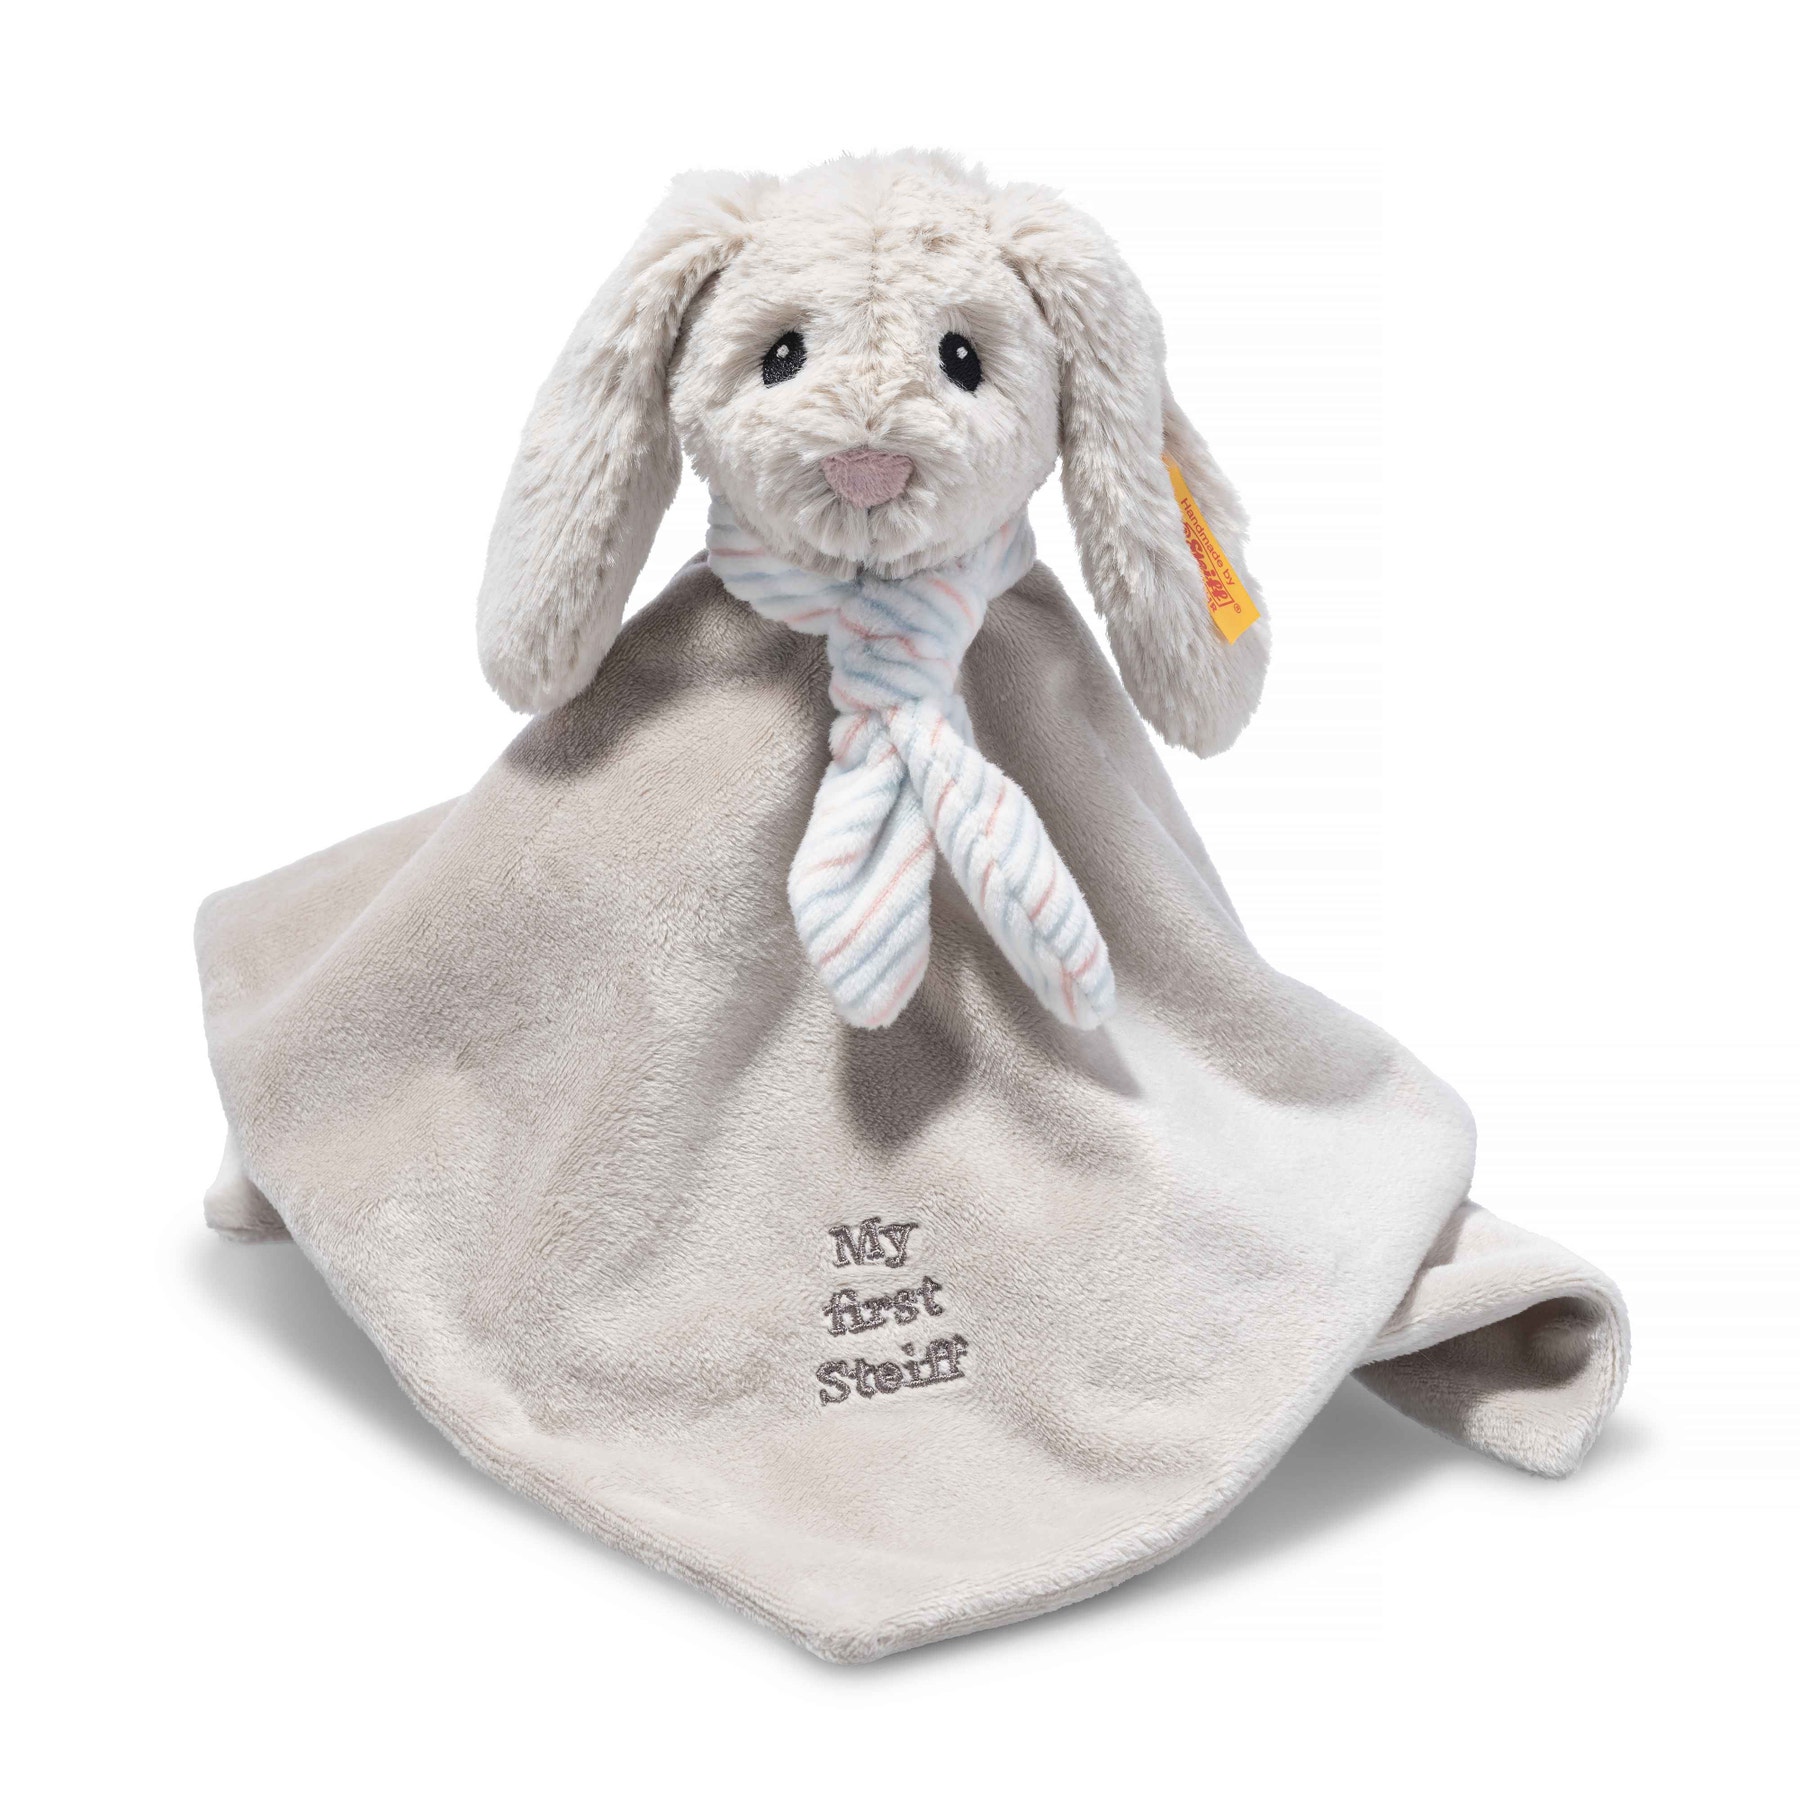 Soft Cuddly Friends My first Steiff Hoppie rabbit comforter